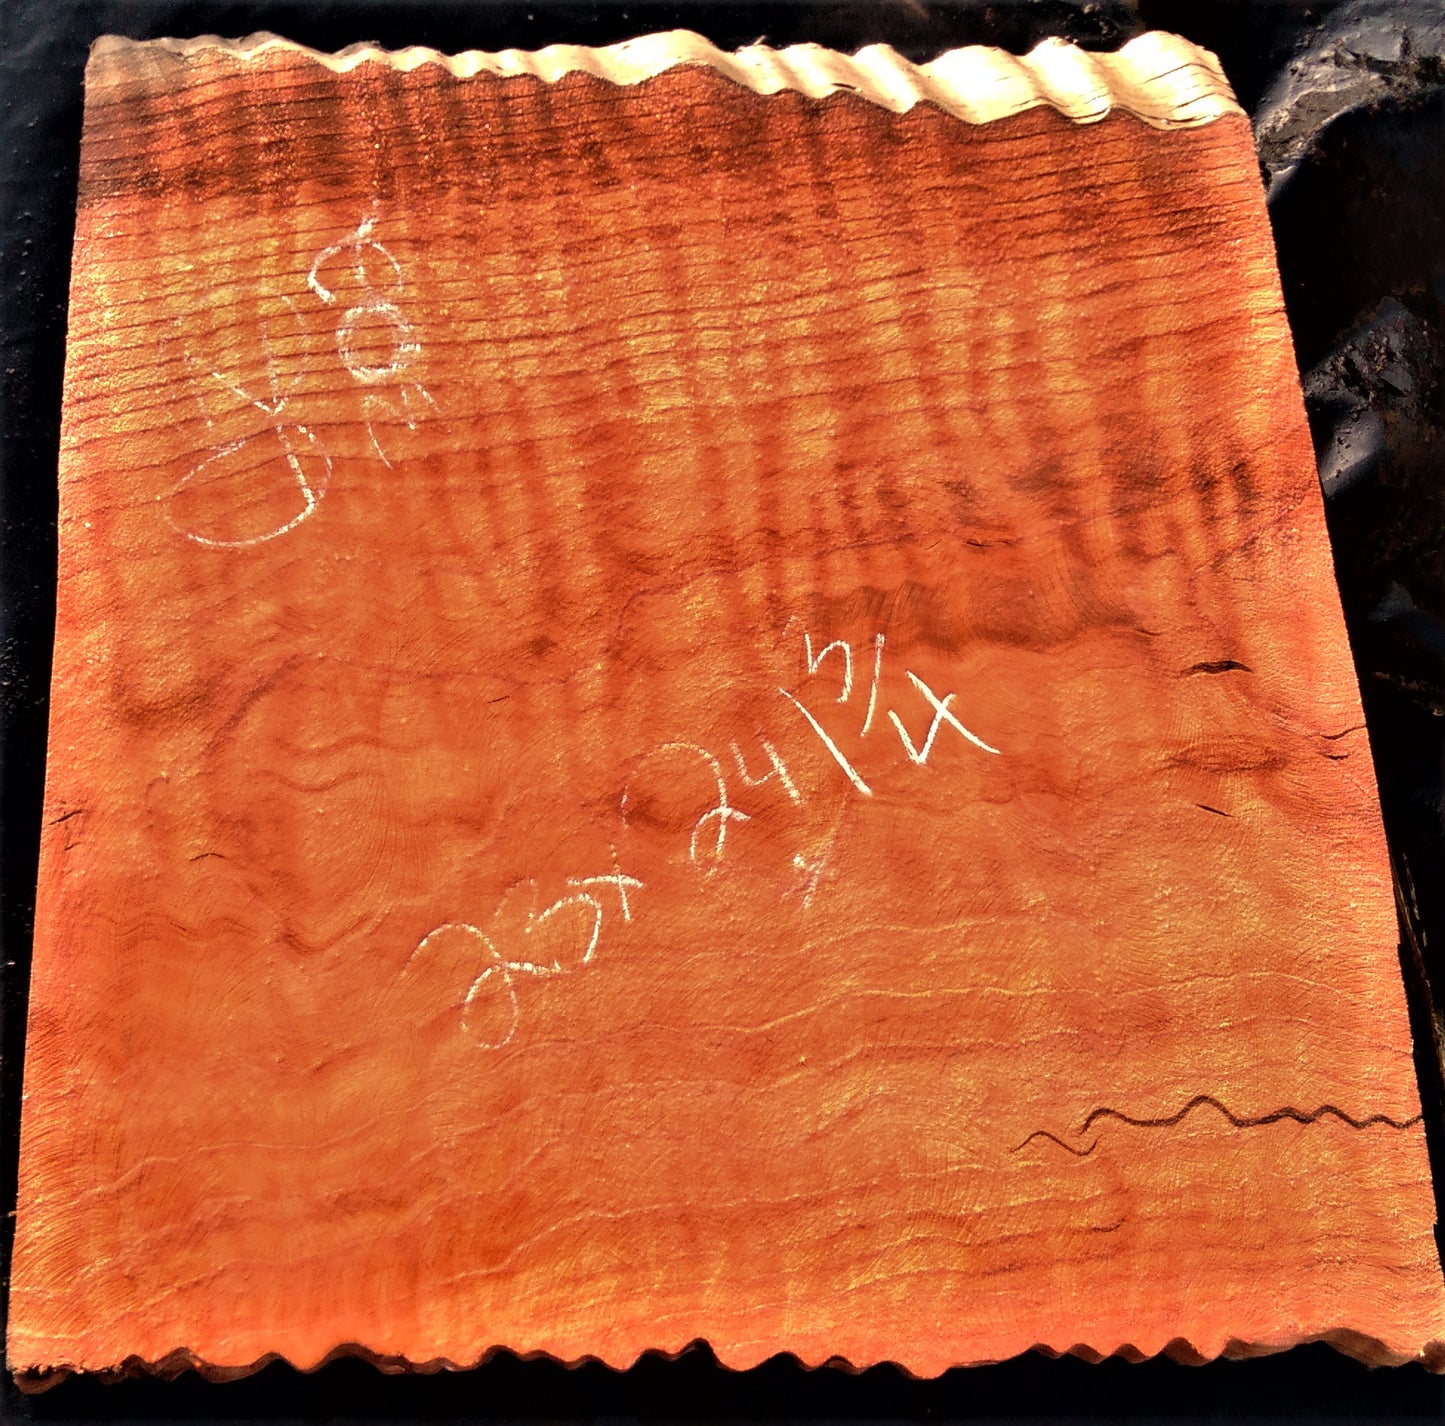 guitar billet | live edge slab | quilted redwood |  craft wood | gz302